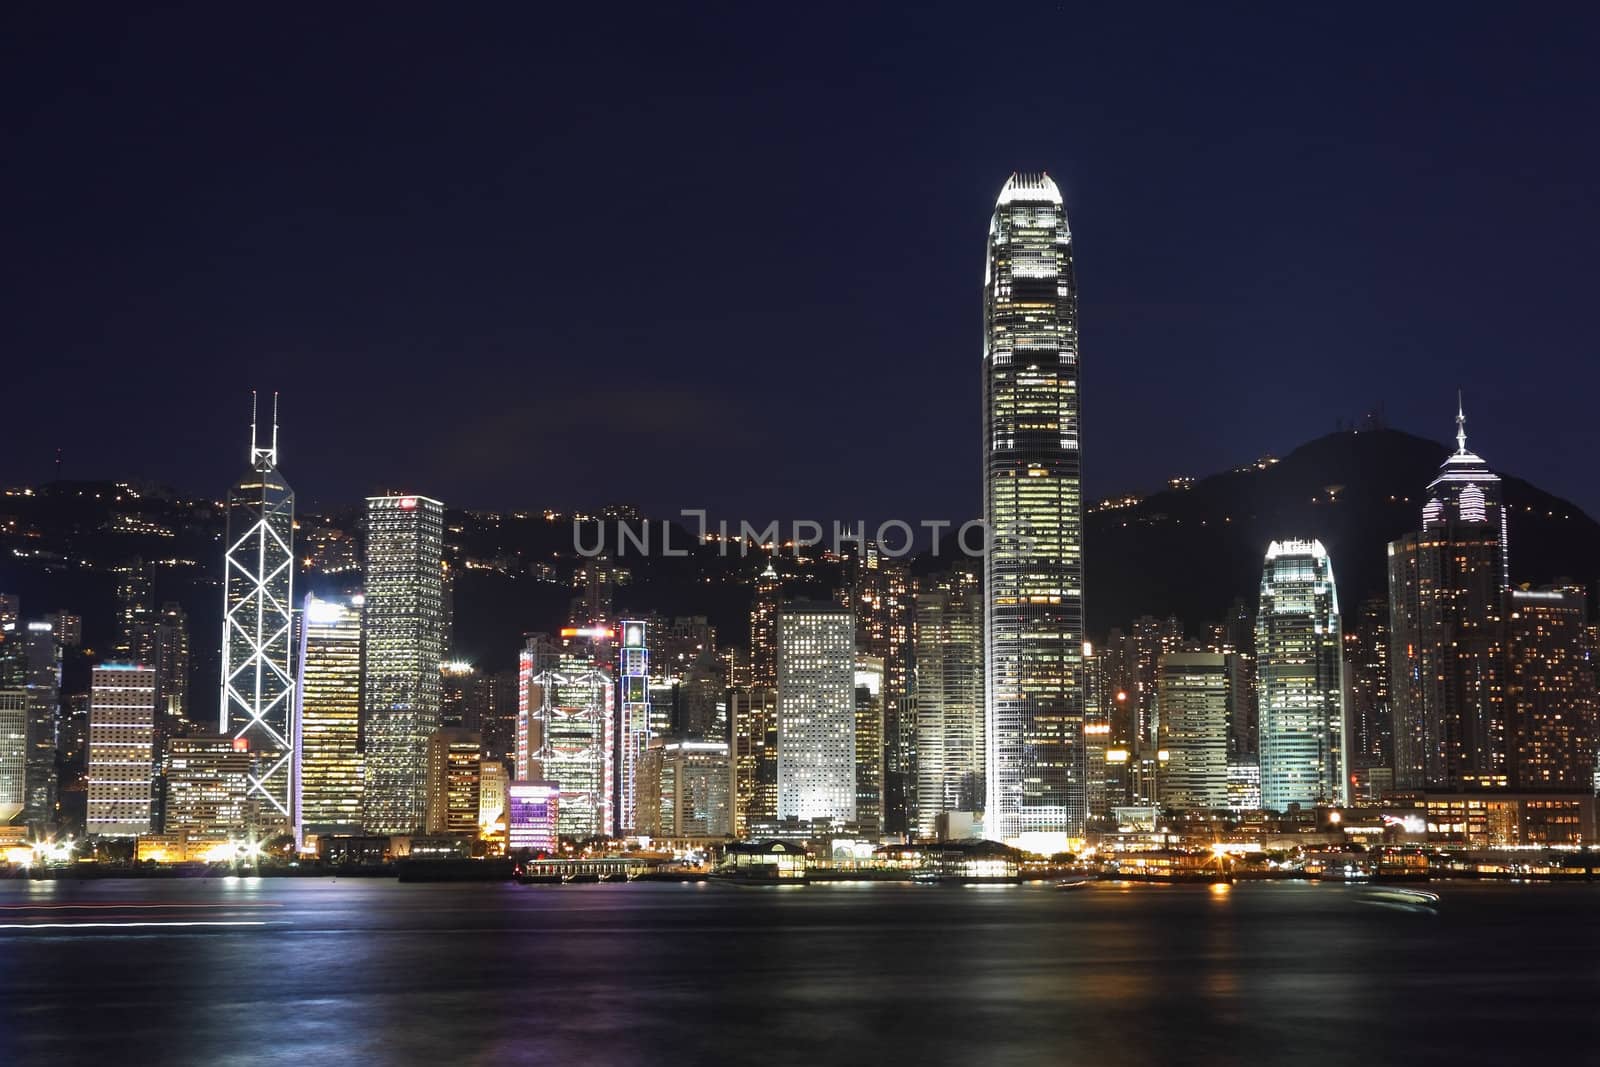 Hong Kong island photographed from Kowloon at night